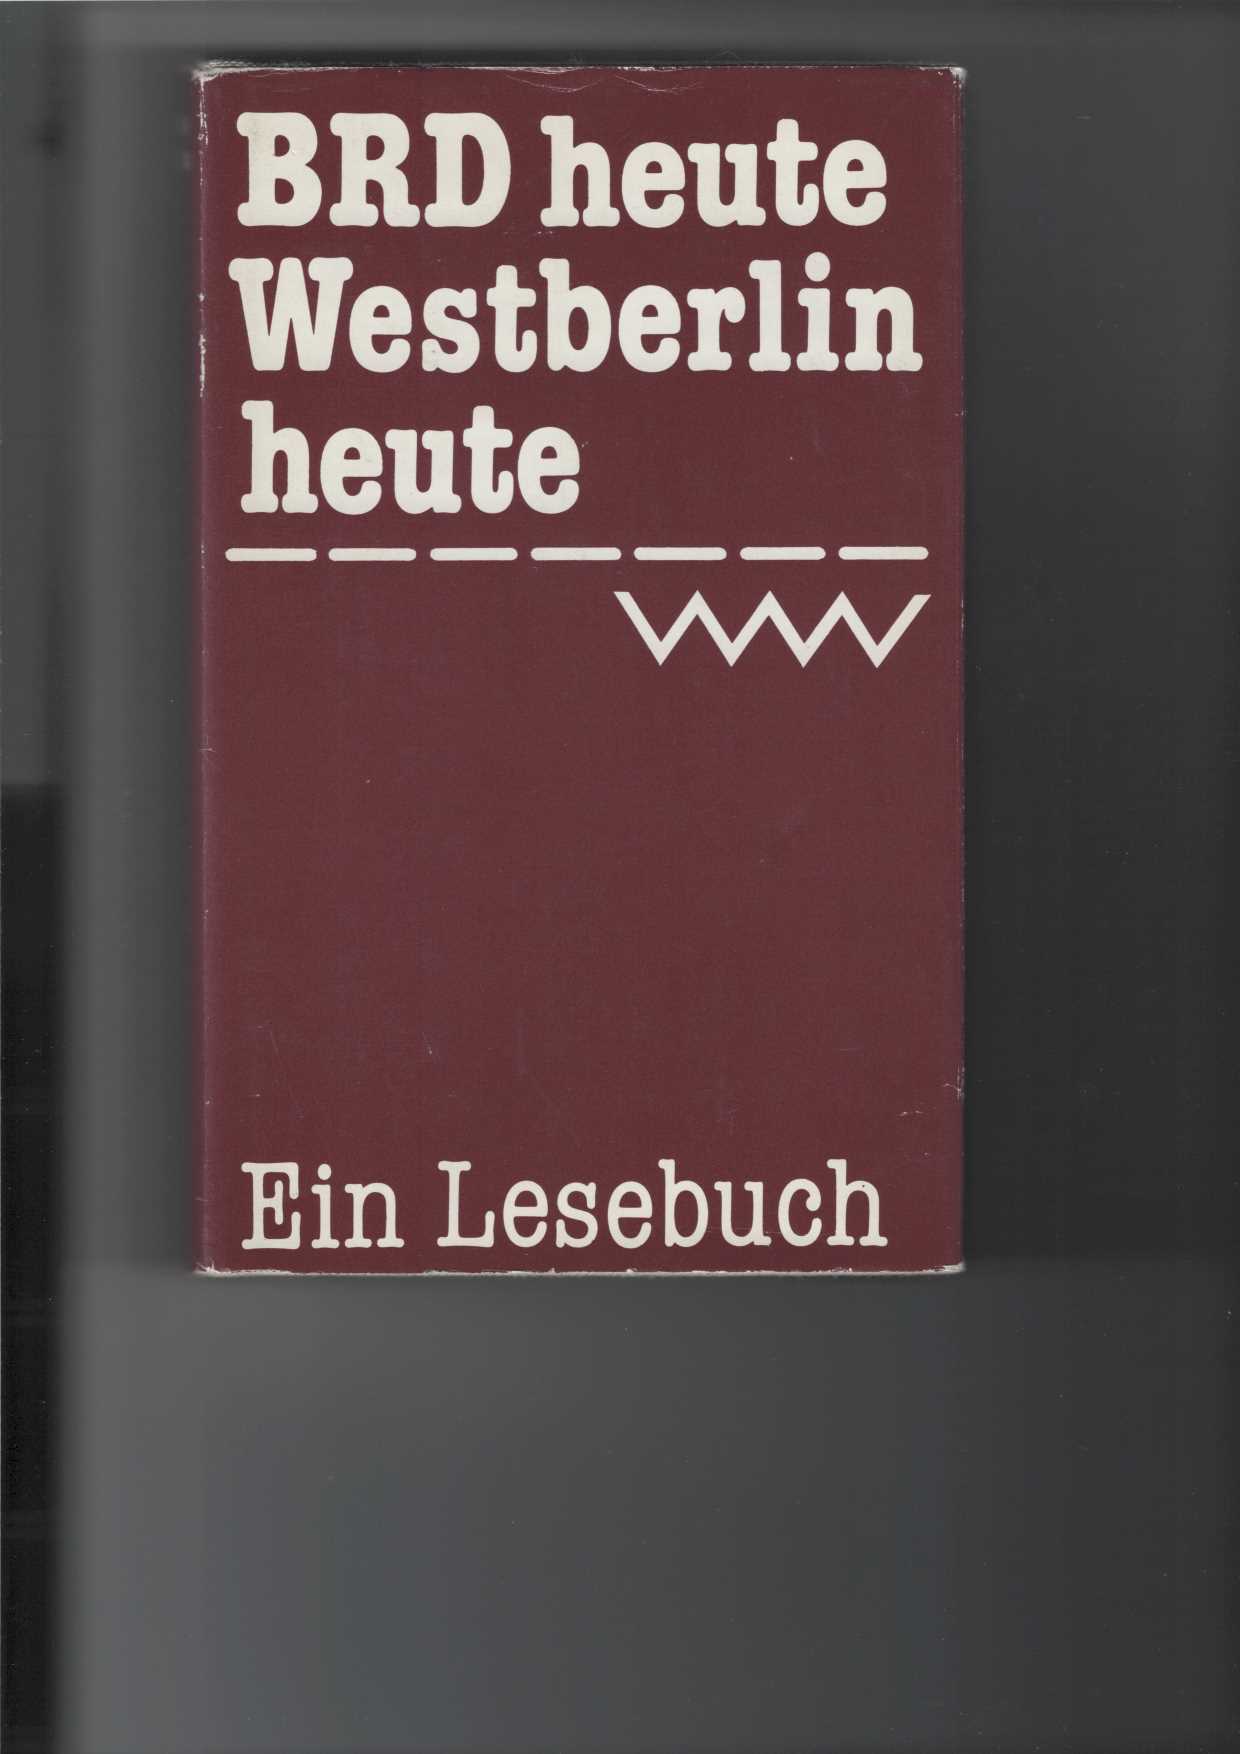   BRD heute - Westberlin heute : Ein Lesebuch. 